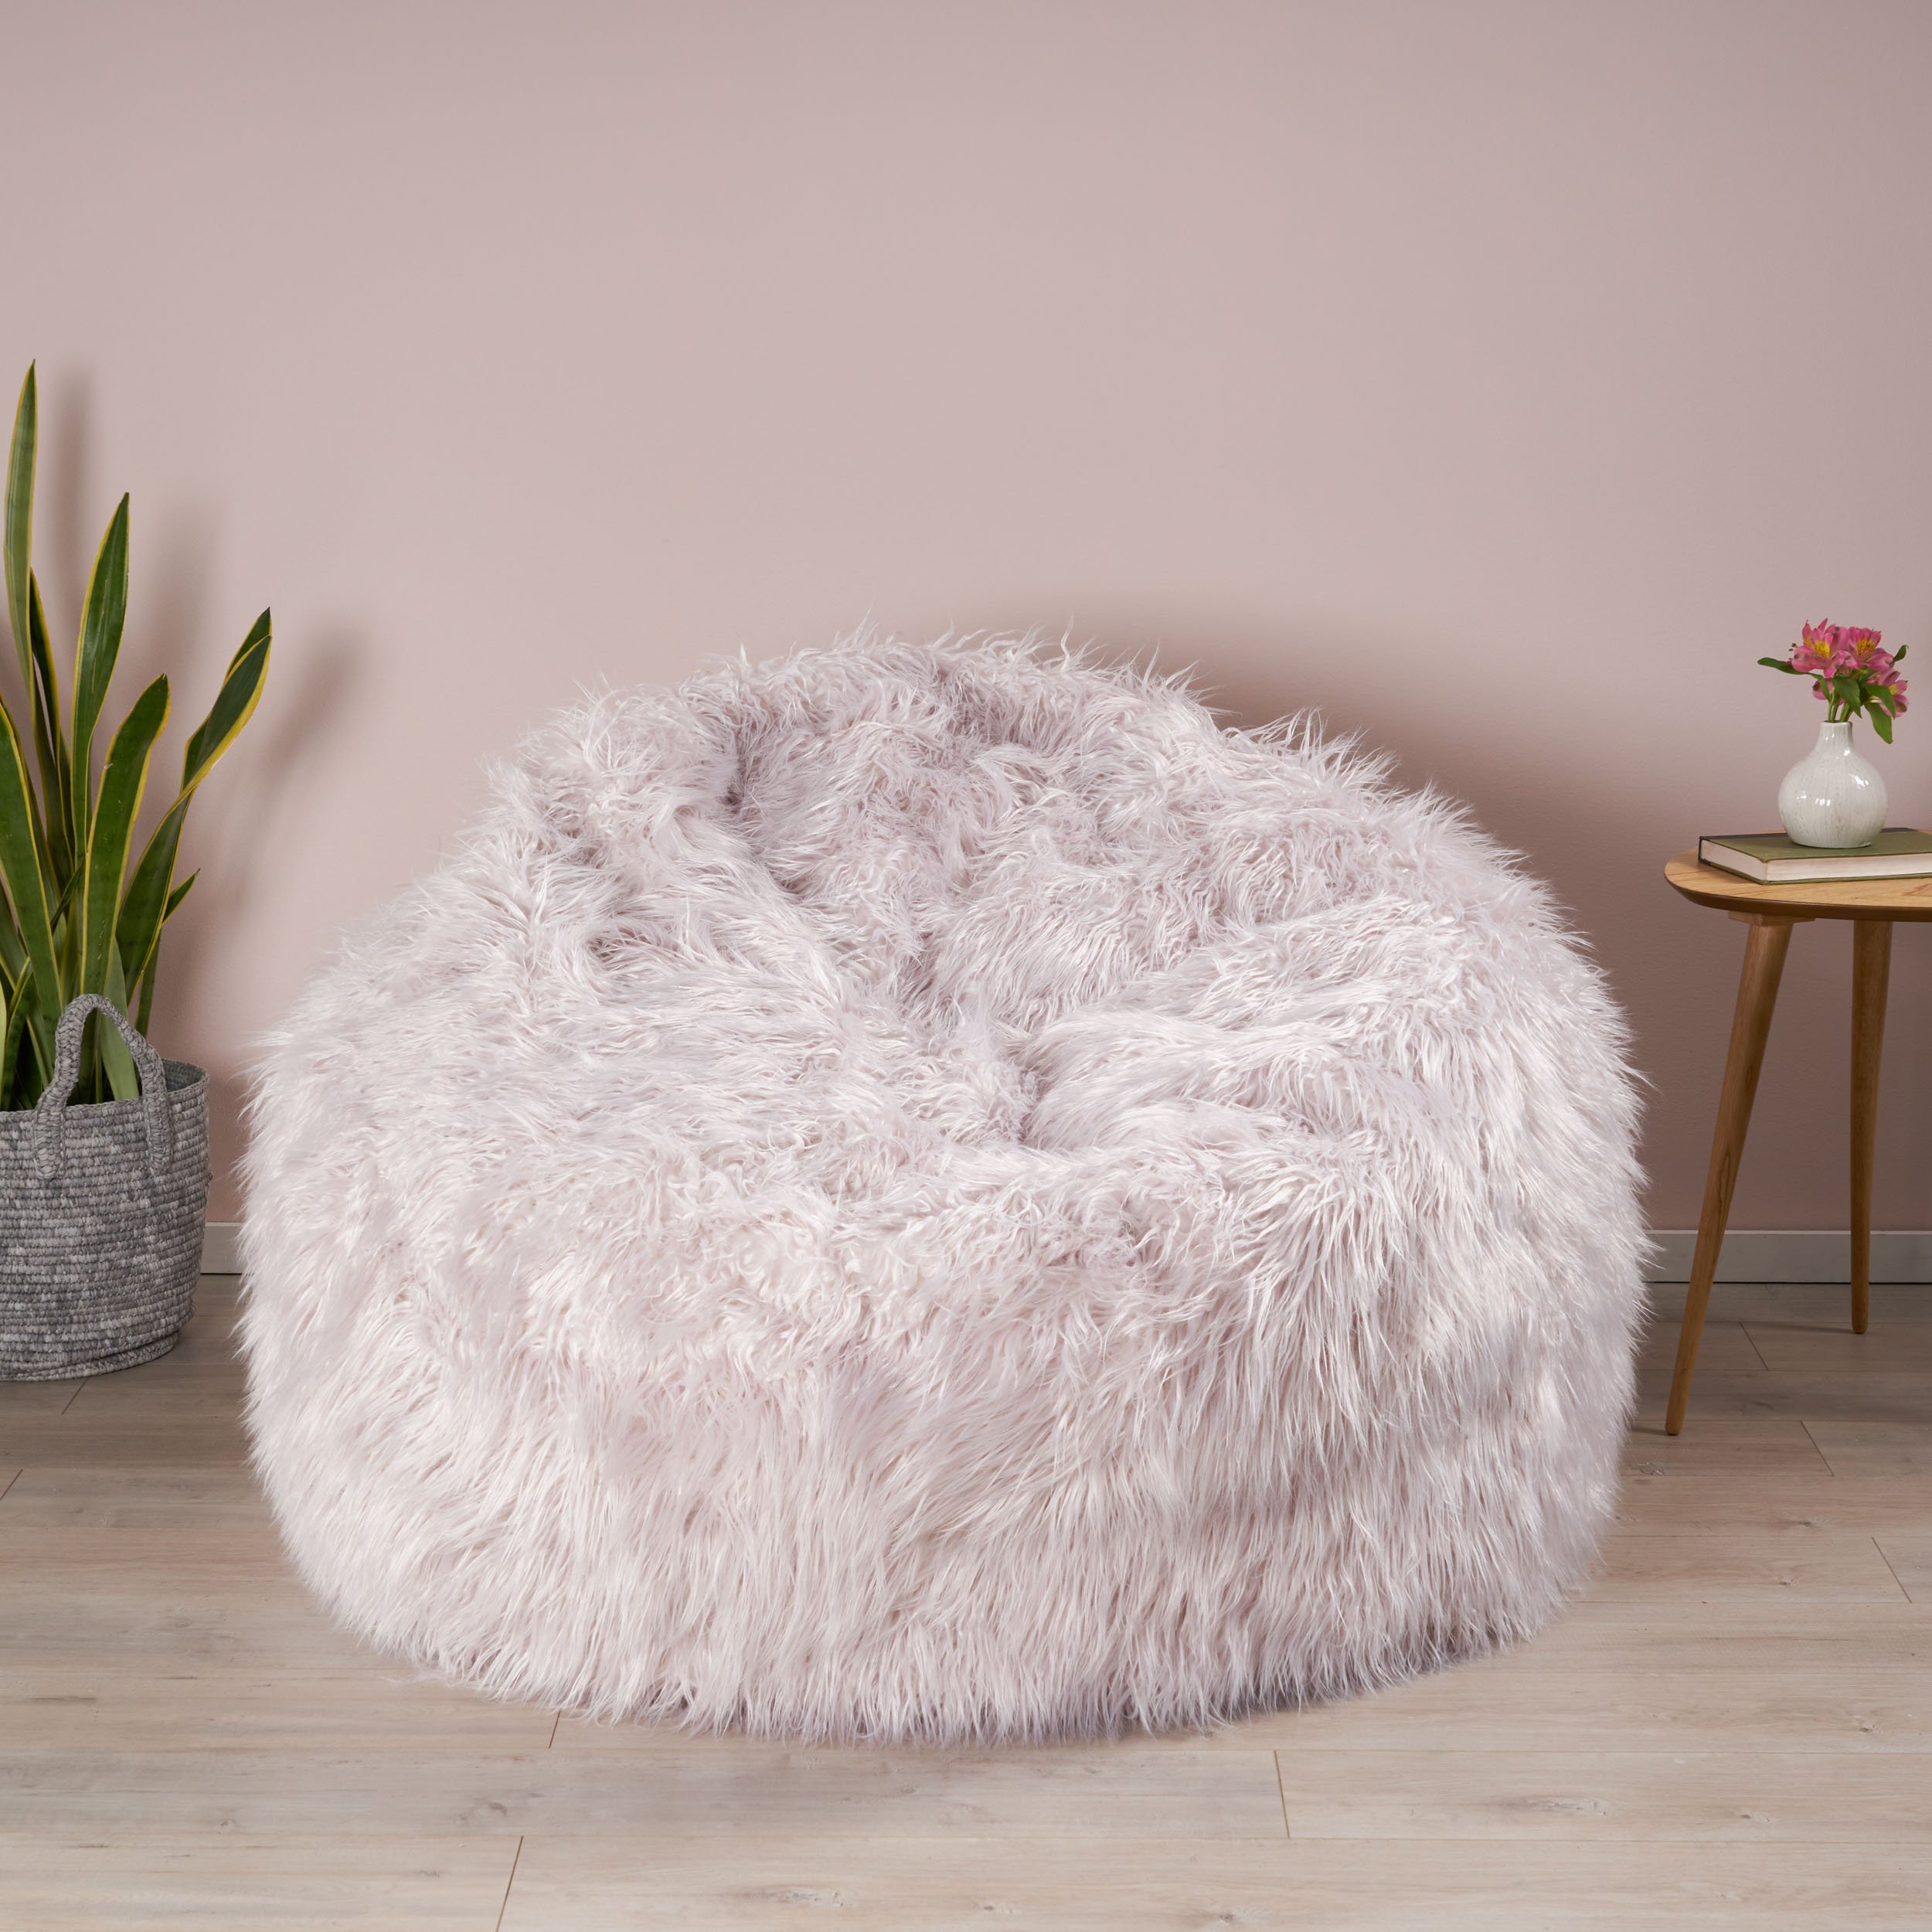 Lycus Faux Fur Bean Bag Chair - Lavender